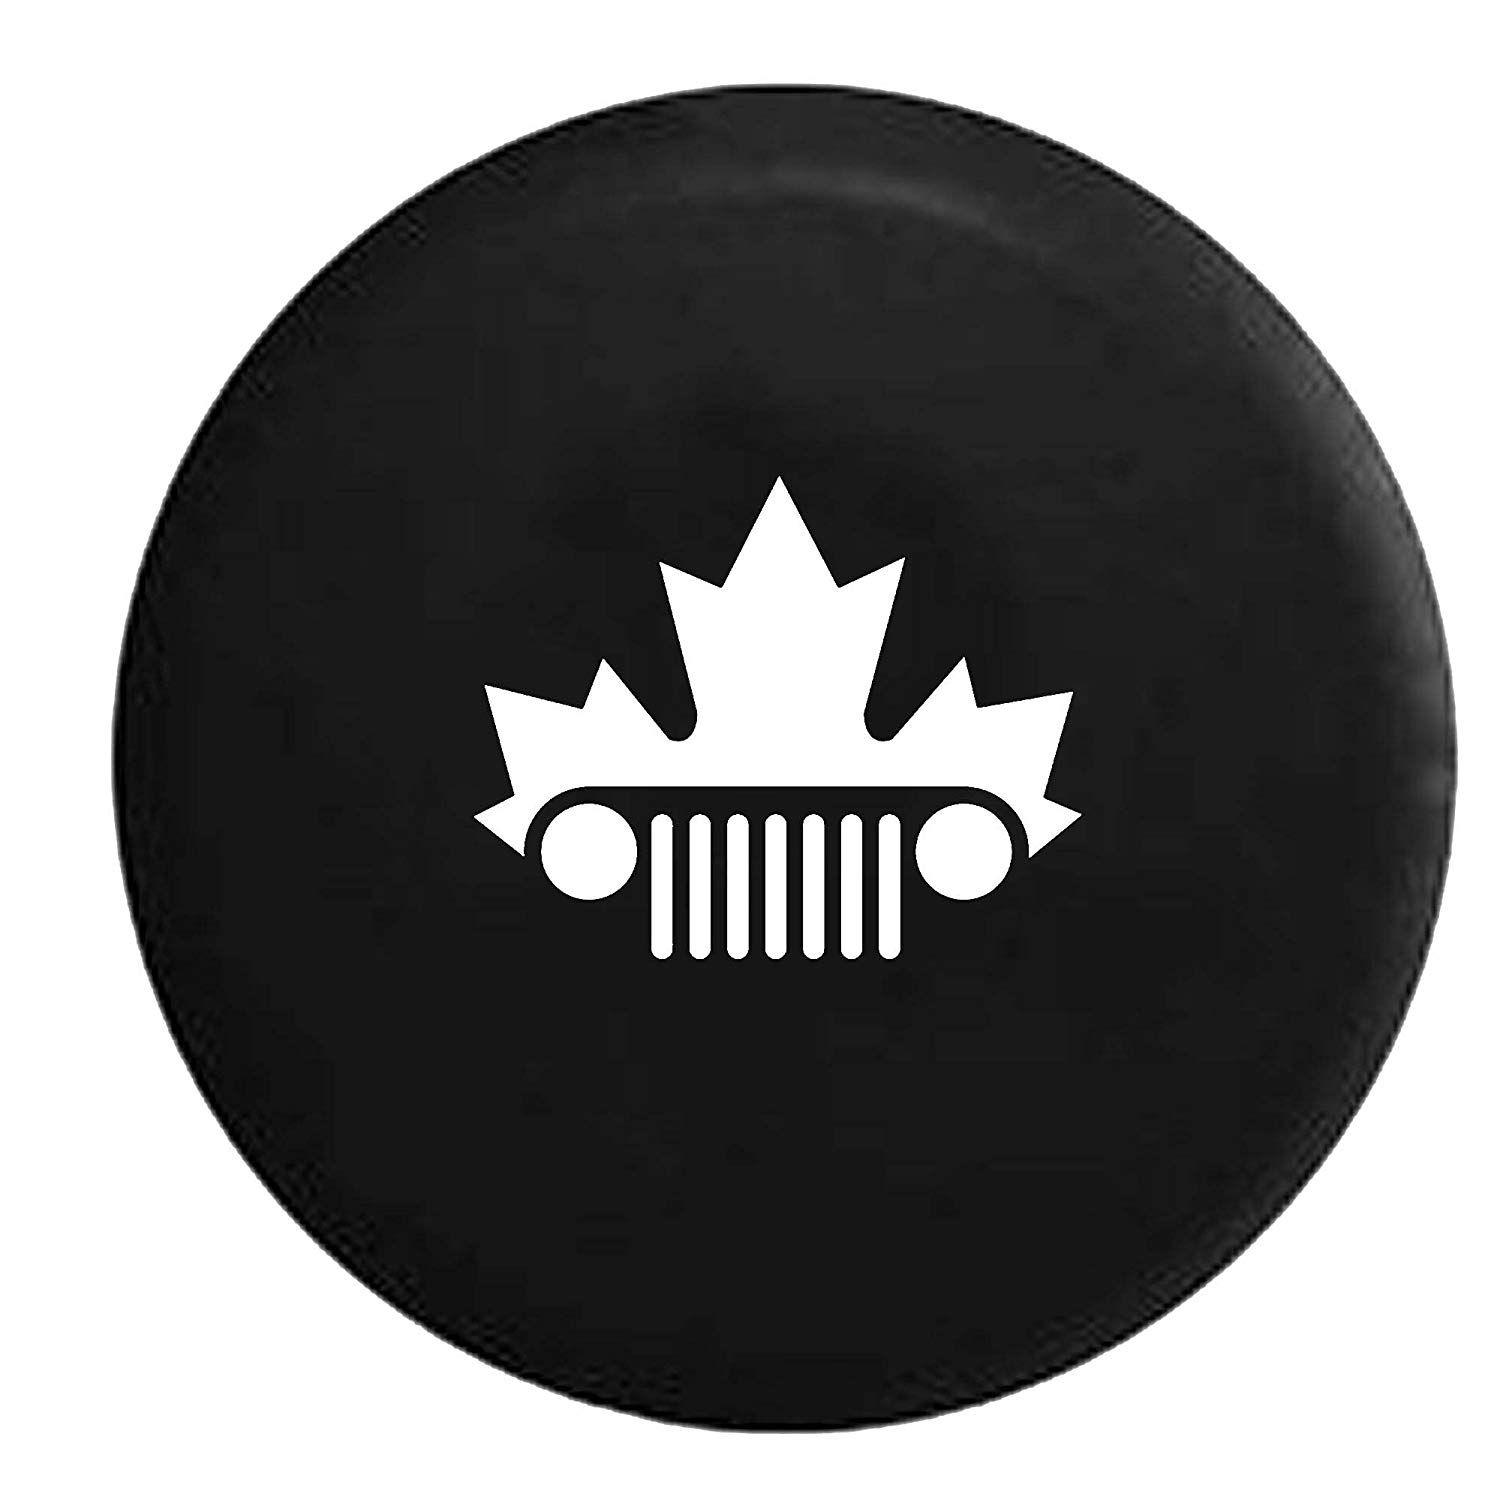 Jeep TJ Grill Logo - Jeep Wrangler JK TJ Grill Canadian Maple Leaf Mountie